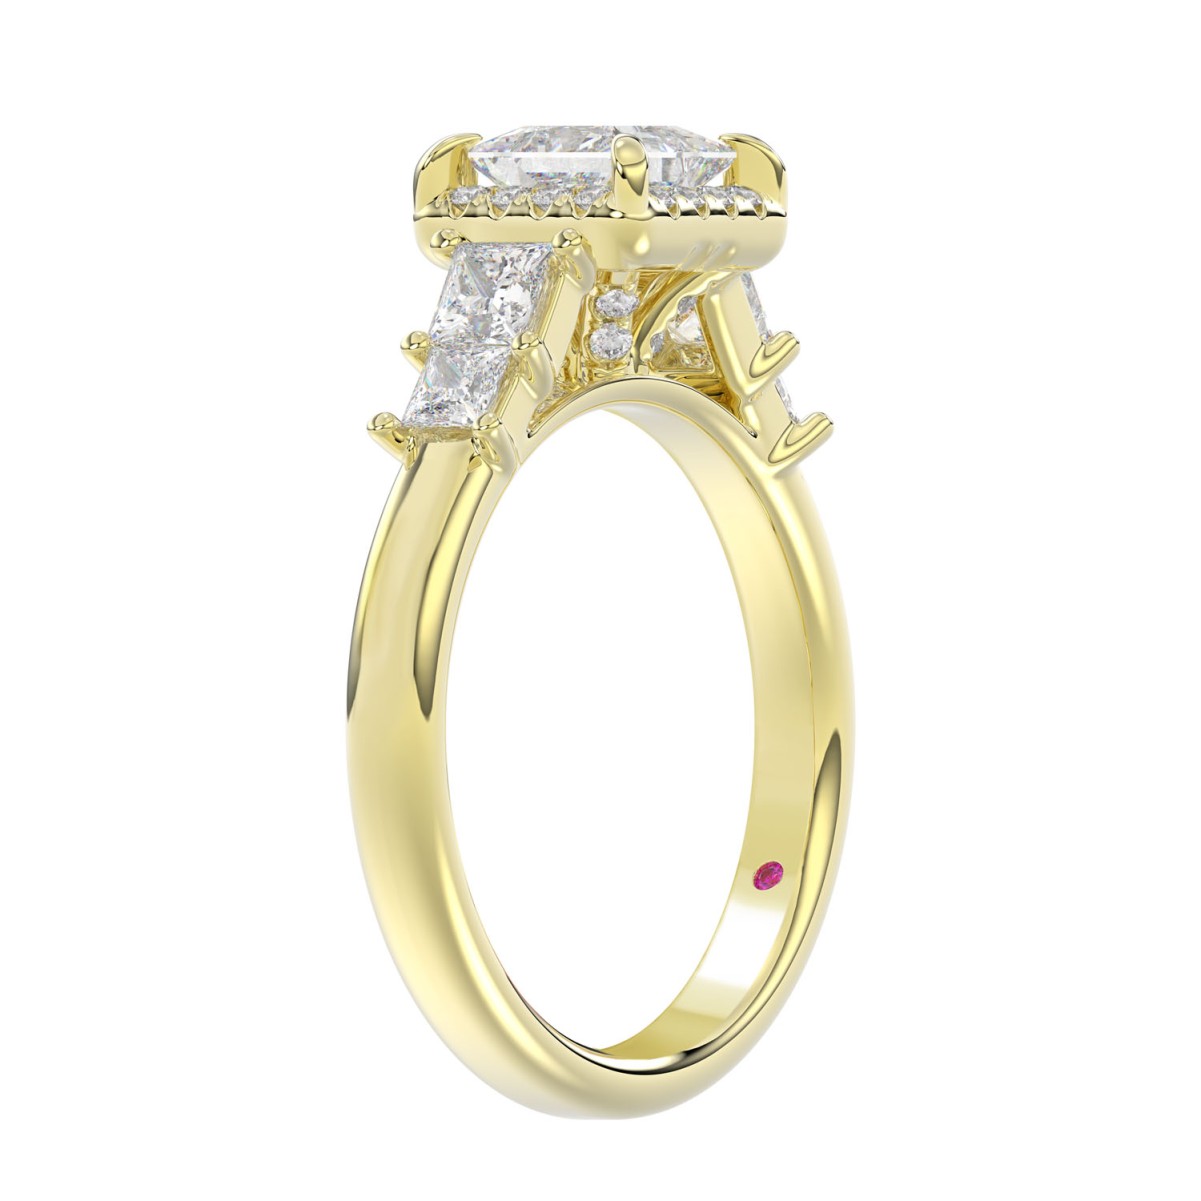 14K YELLOW GOLD 1 1/2CT ROUND/PRINCESS DIAMOND LADIES RING( CENTER STONE PRINCESS DIAMOND 3/4 CT)